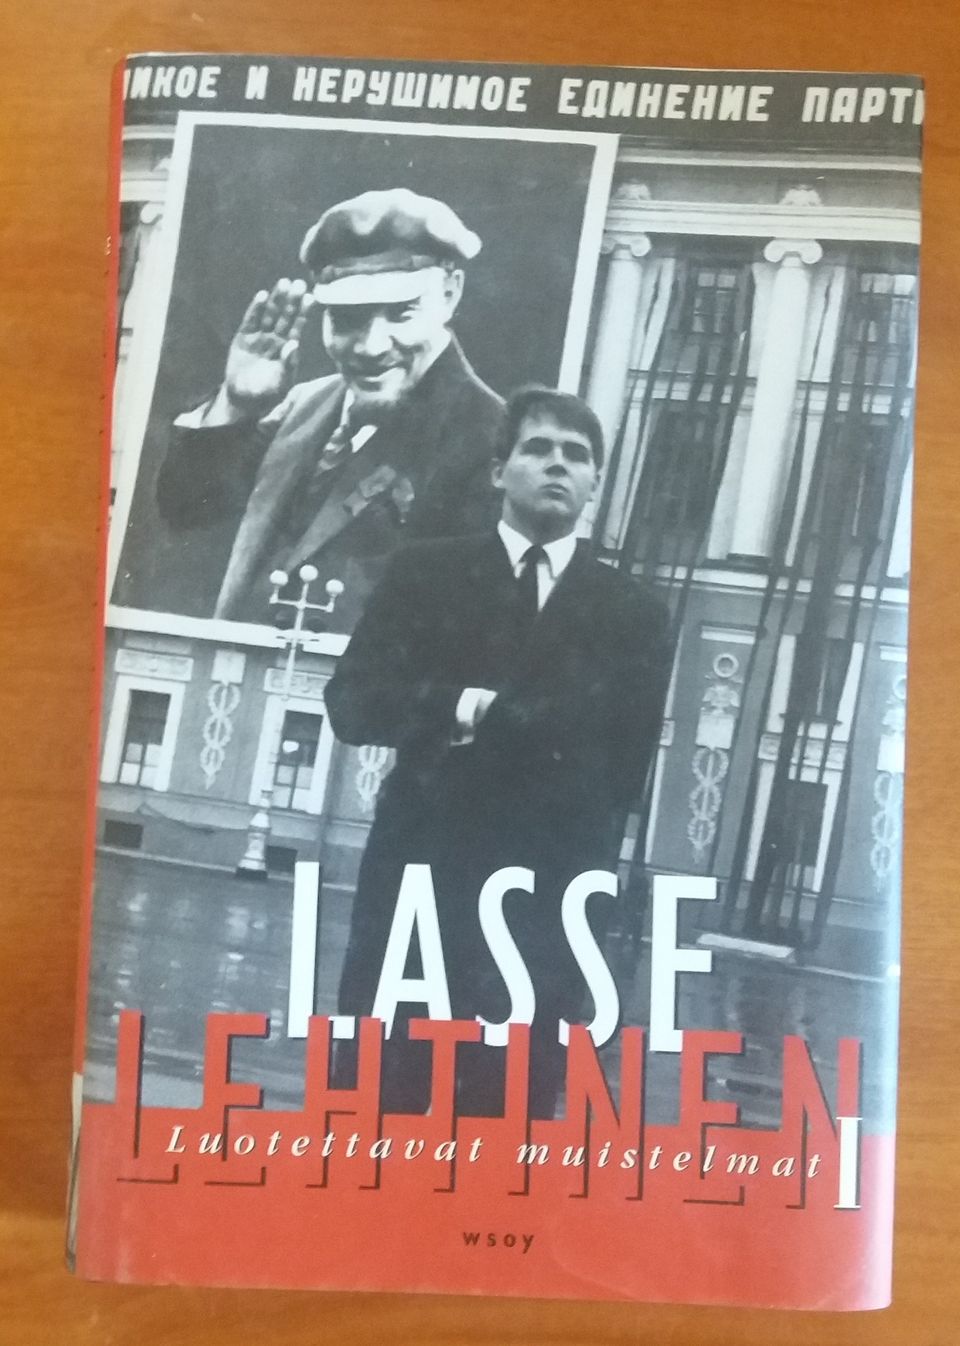 Lasse Lehtinen LUOTETTAVAT MUISTELMAT I Wsoy 1996